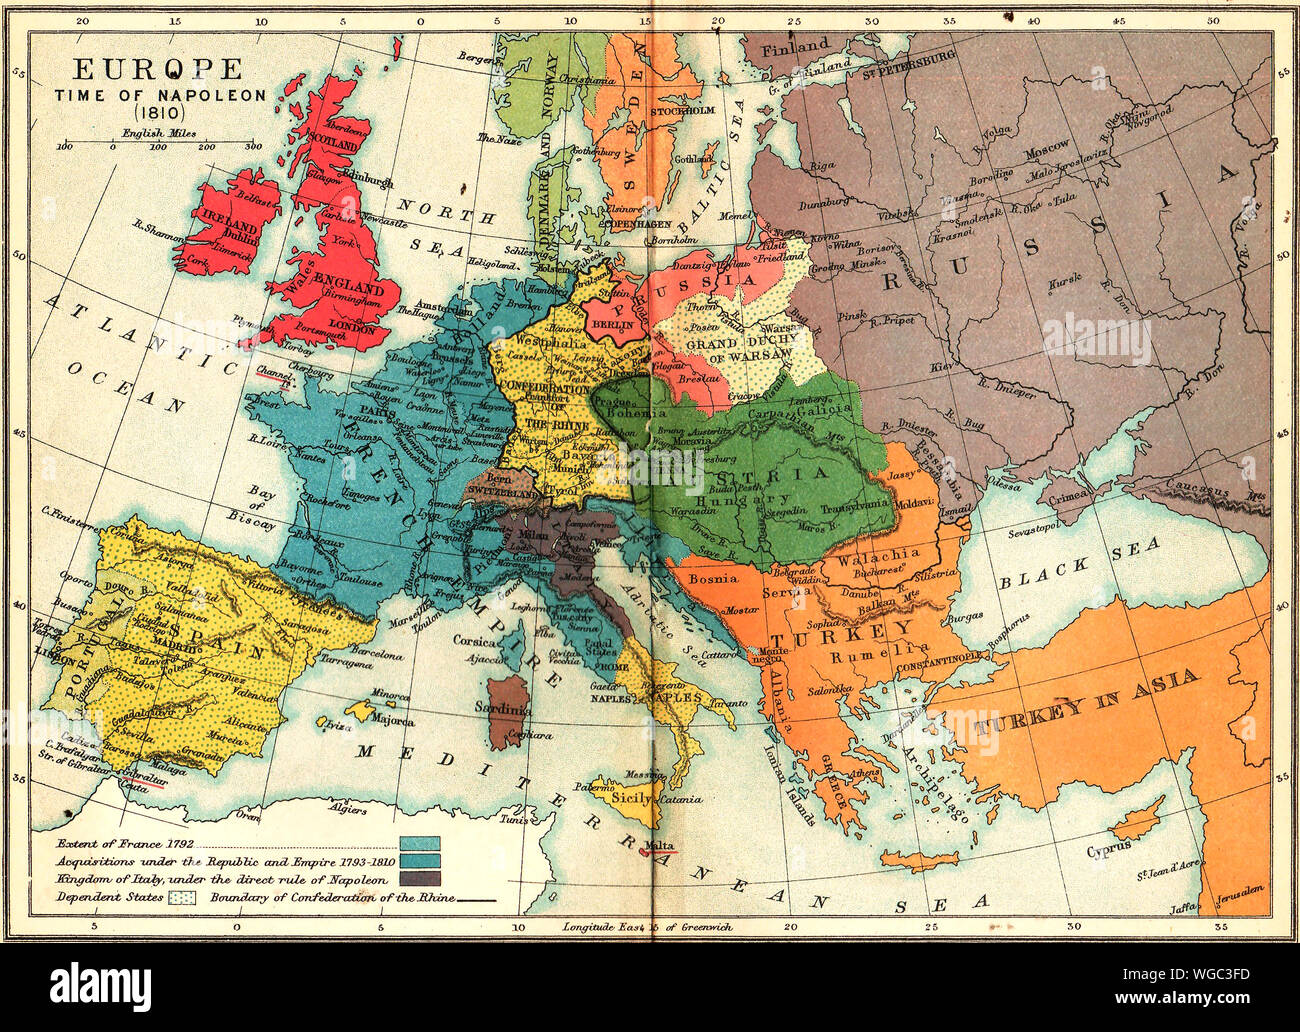 Eine 1910 Karte Europa, in der Zeit von Napoleon (1810) - Land von  Frankreich im Jahre 1792